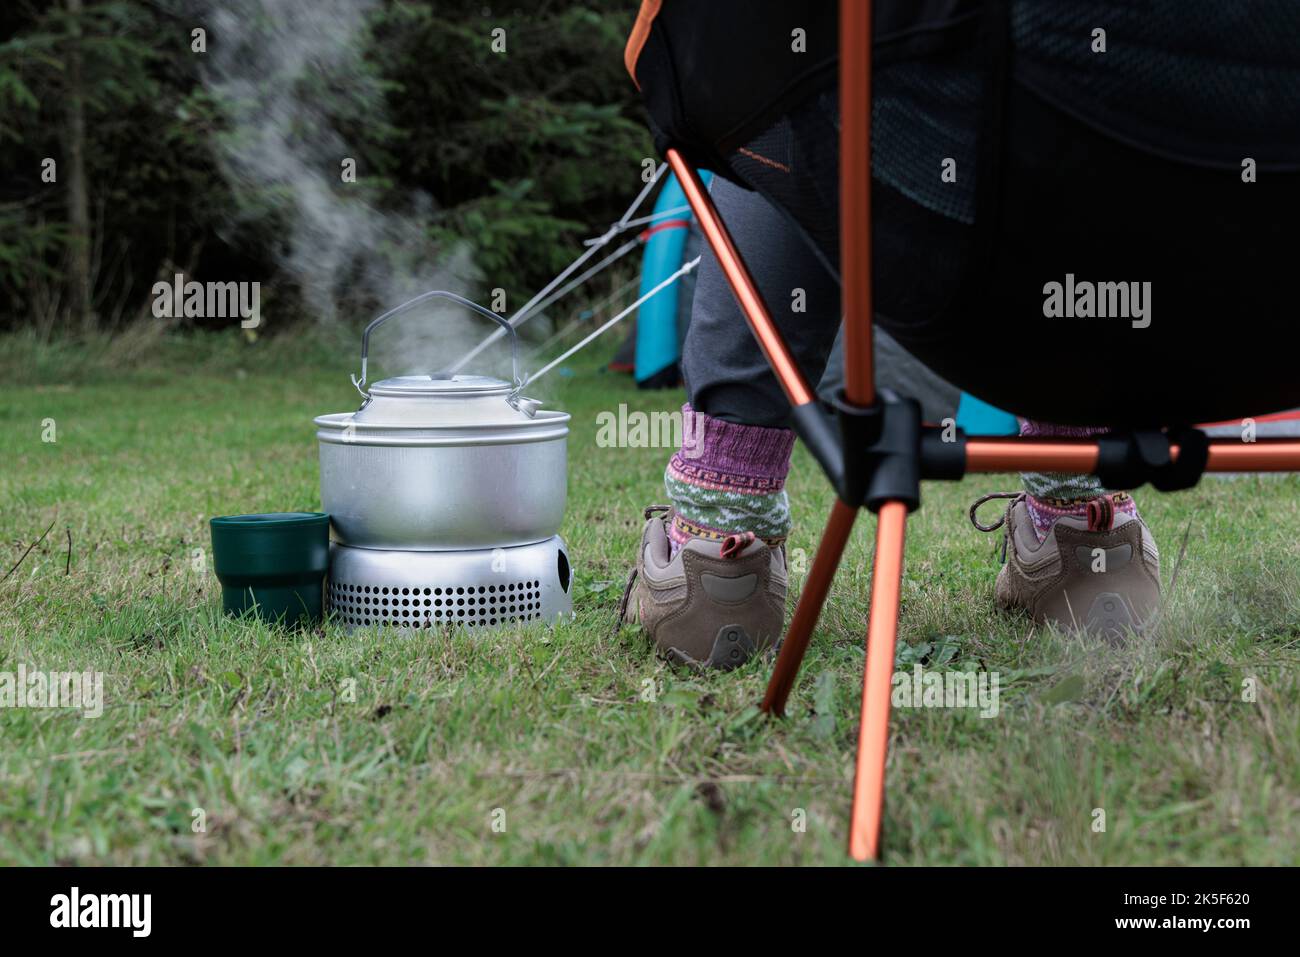 Frau kocht einen Wasserkocher auf einem Campingkocher. Stockfoto